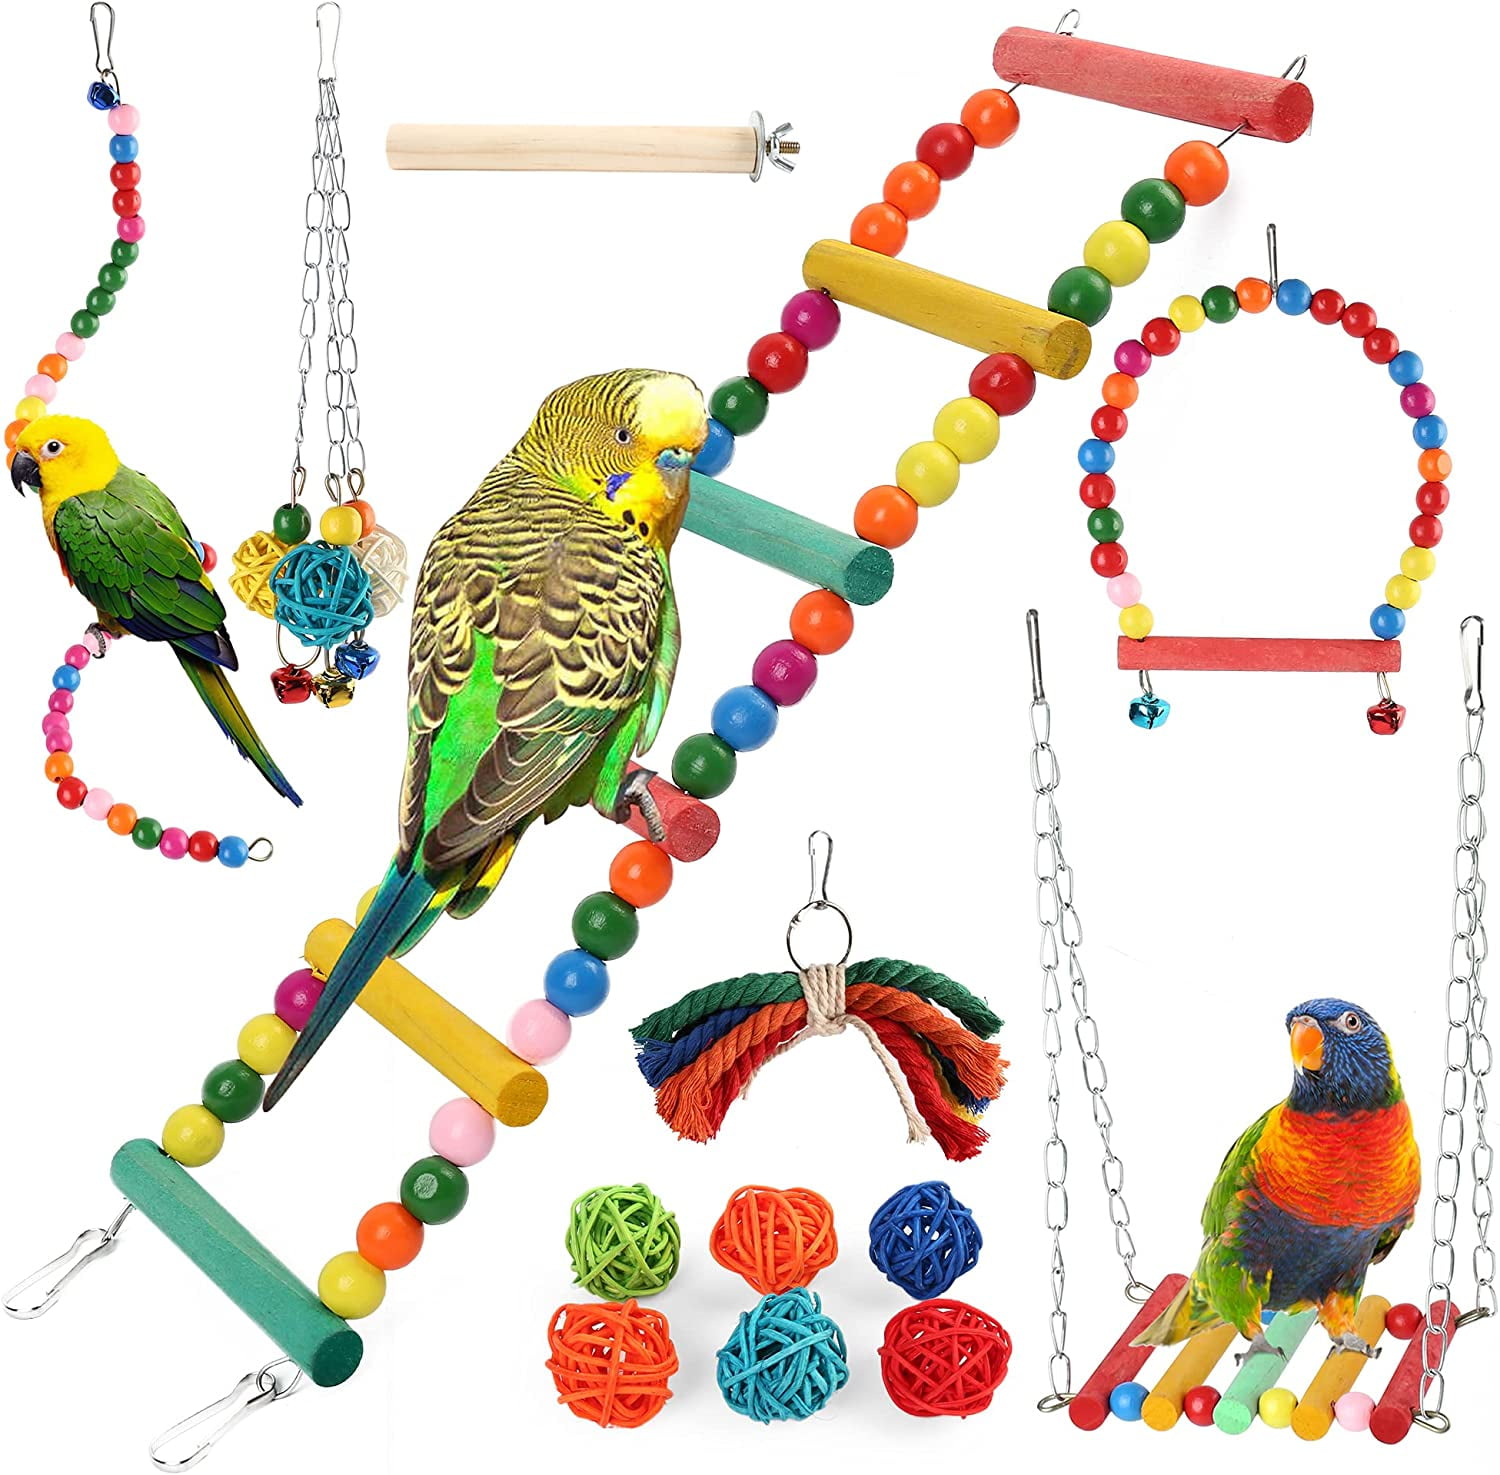 Bulk Mini Pine Cones 1 Pound Bird Toy Parts for Parrots, Conures,  Cockatiels, Caiques, Etc. 